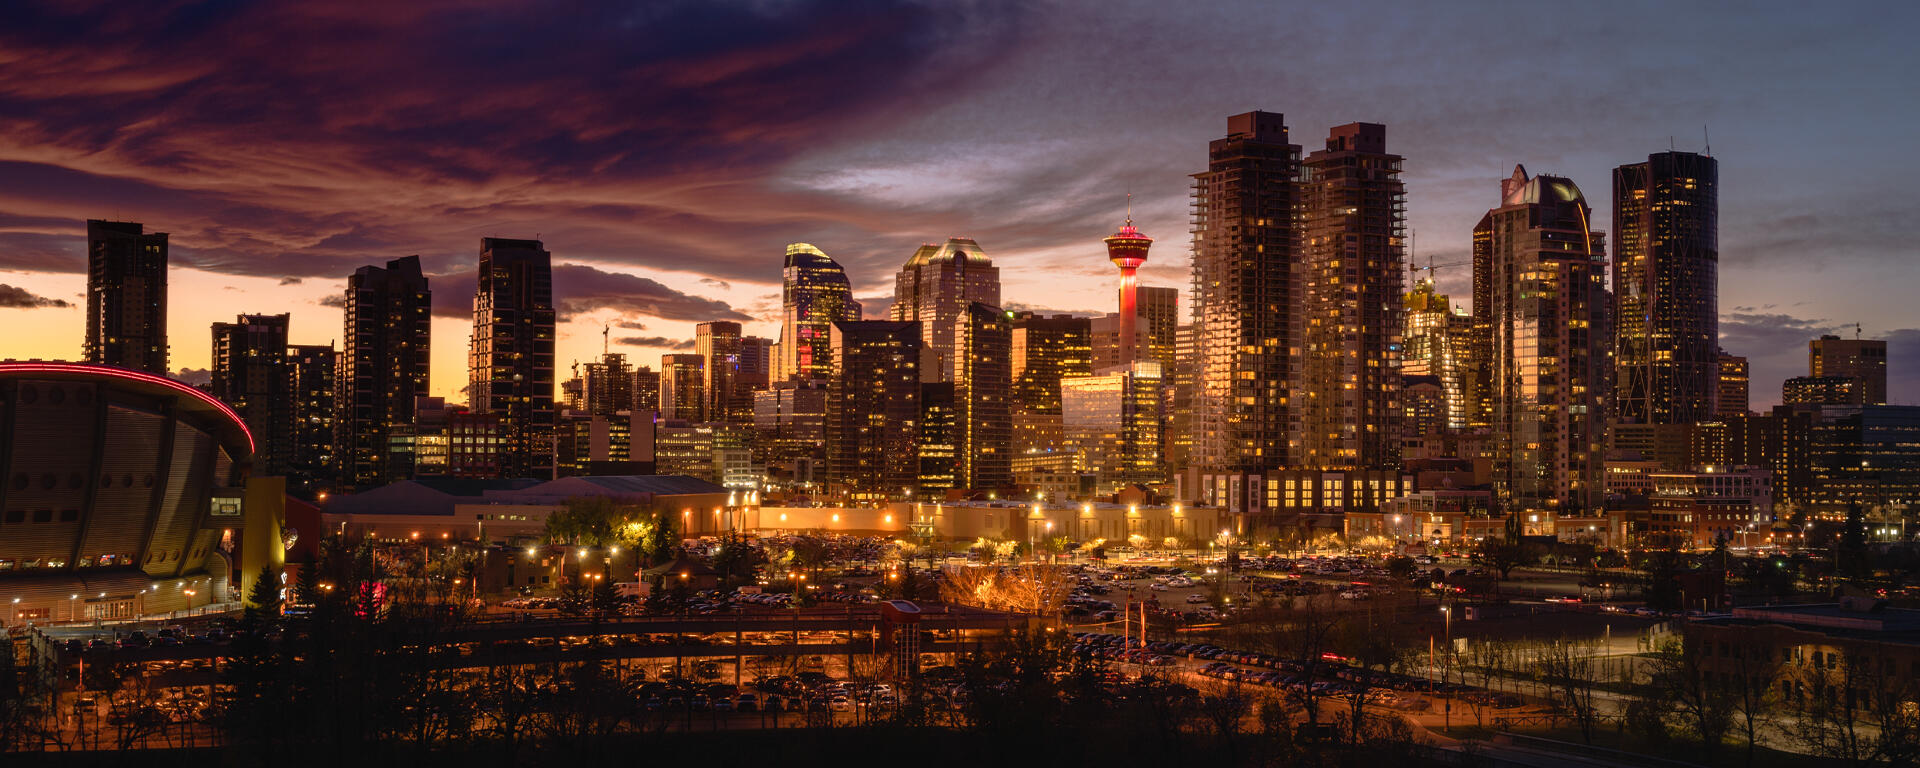 Calgary cityscape at night